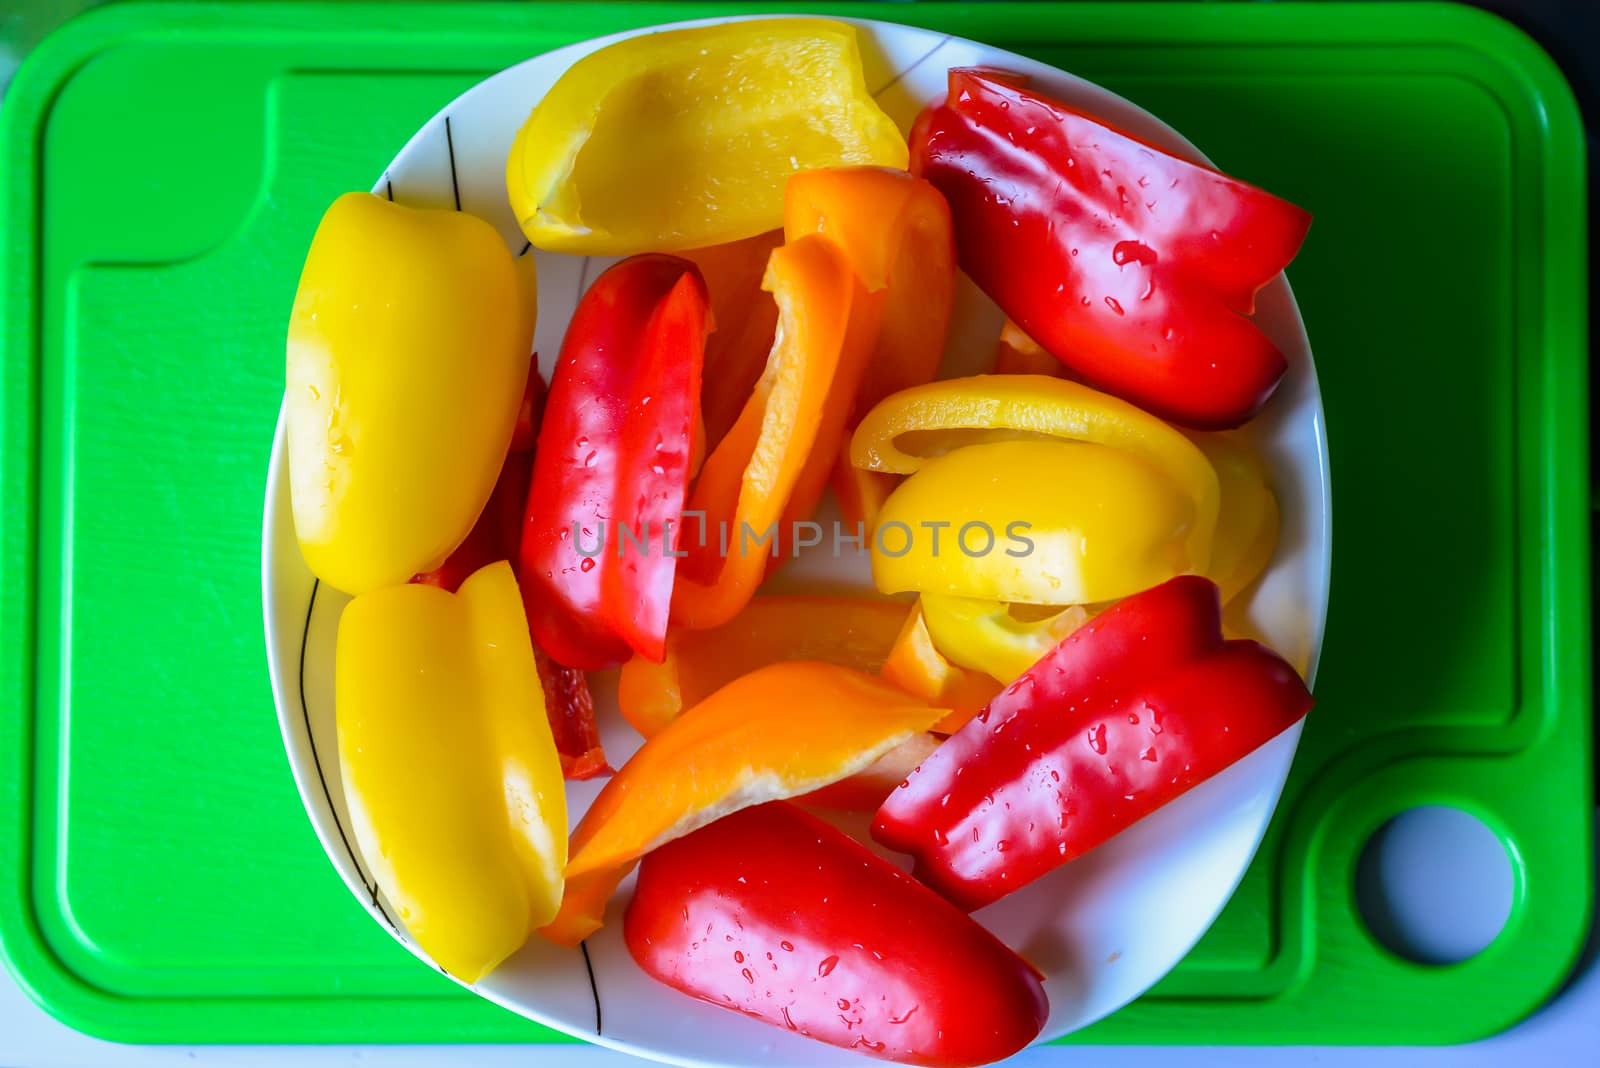 Bell peppers in white plate by okskukuruza